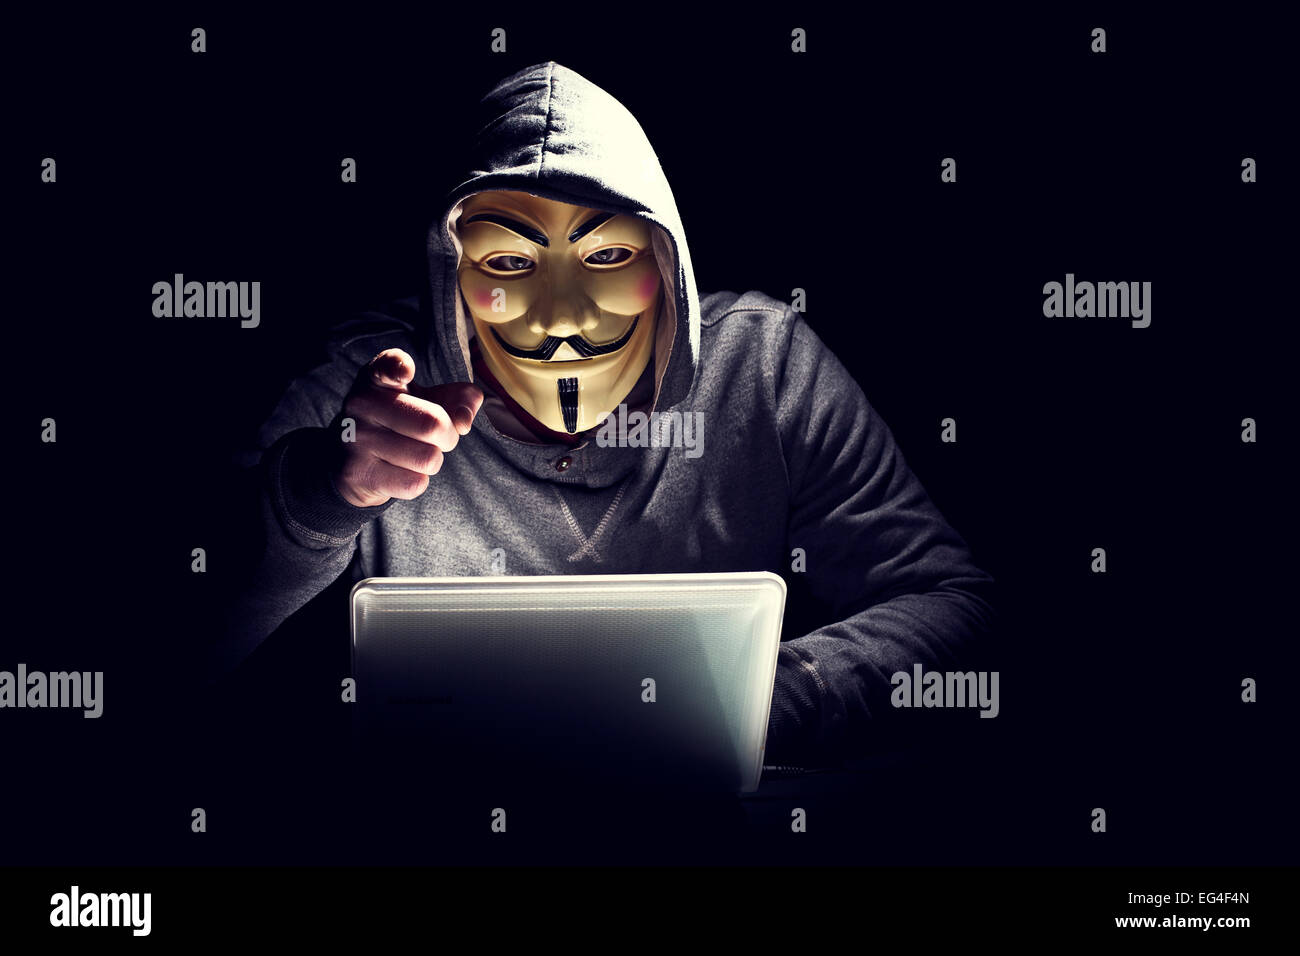 Porträt von Hacker mit Maske Stockfoto